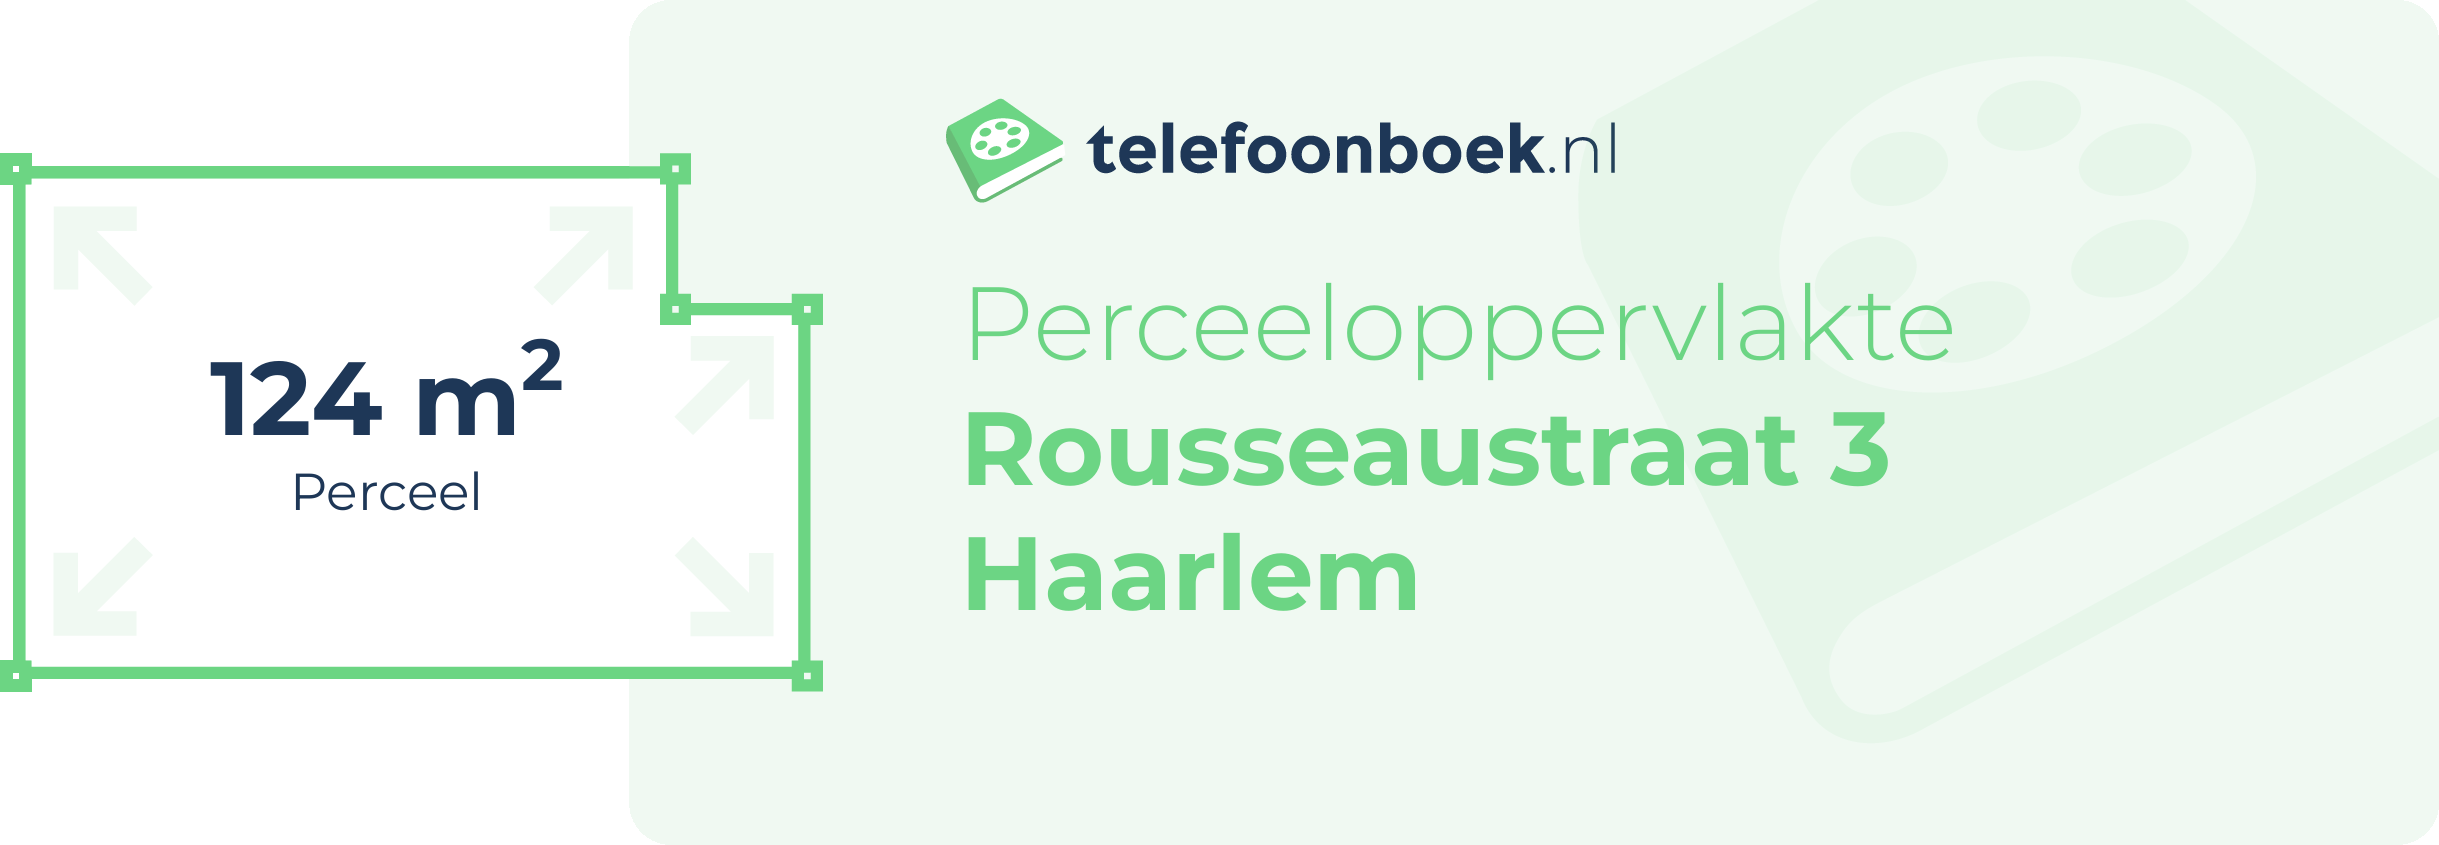 Perceeloppervlakte Rousseaustraat 3 Haarlem